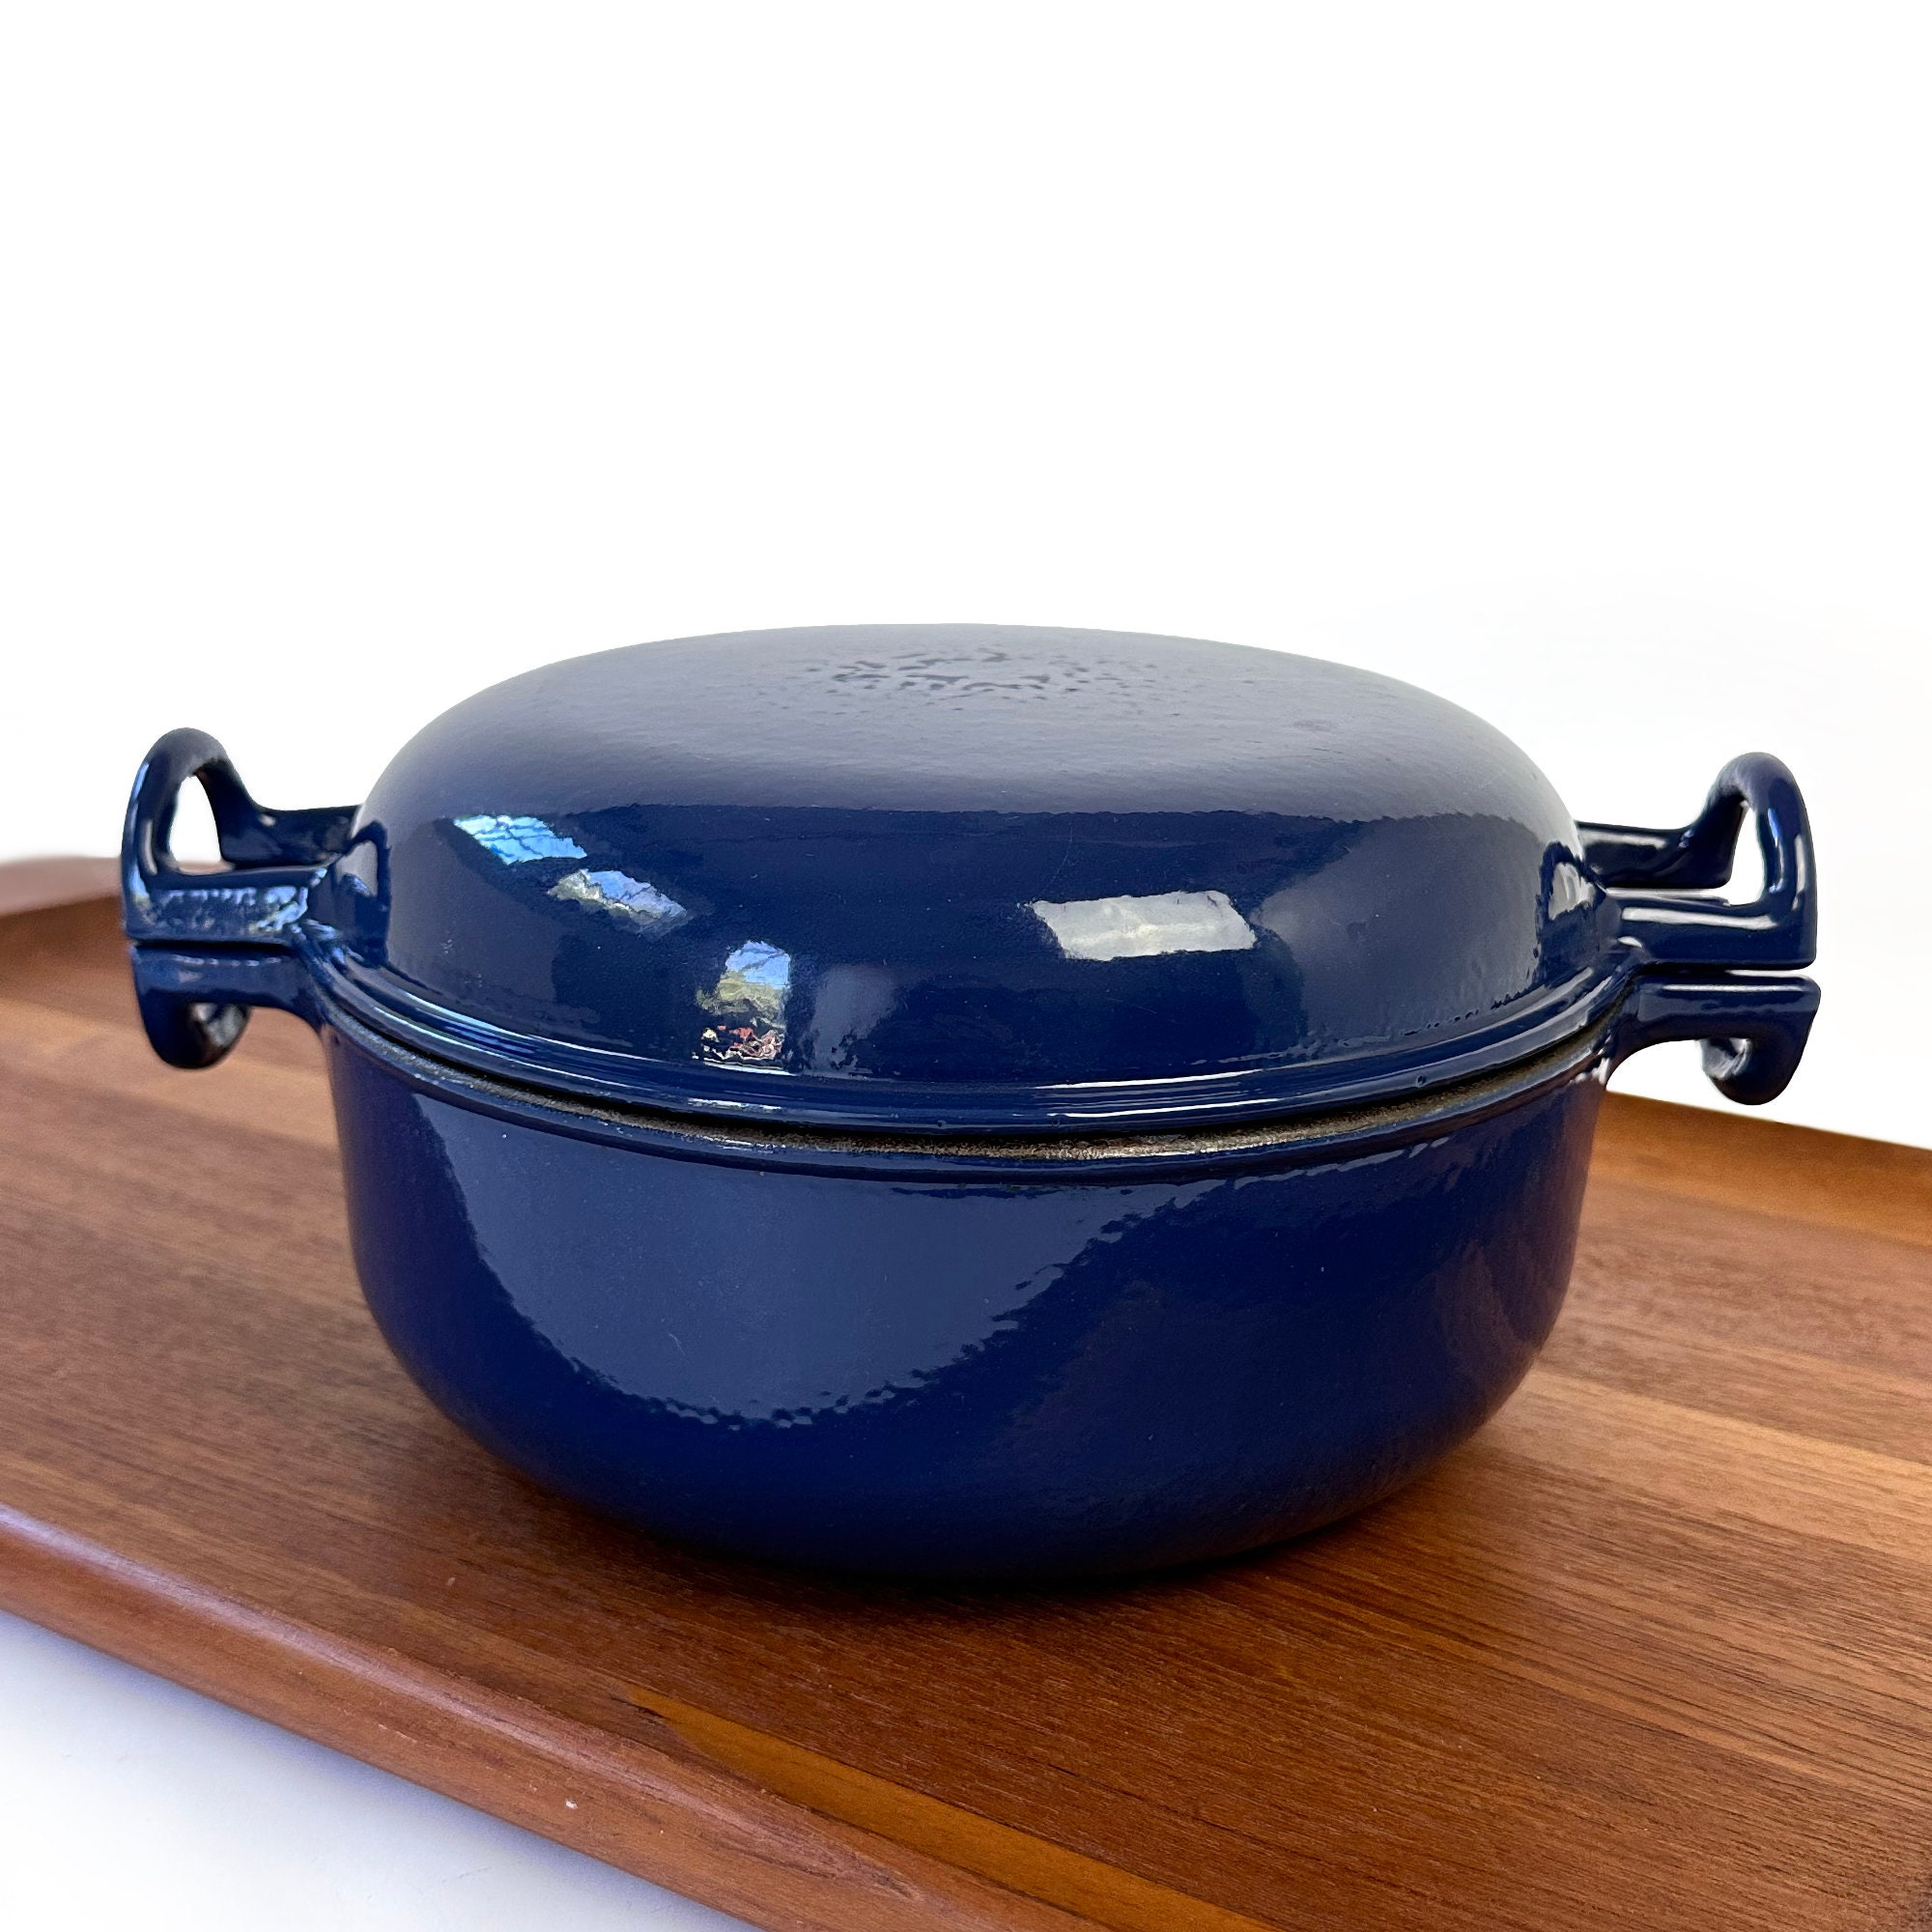 Dansk - DANSK designs Blue Enamelware Casserole Pot with